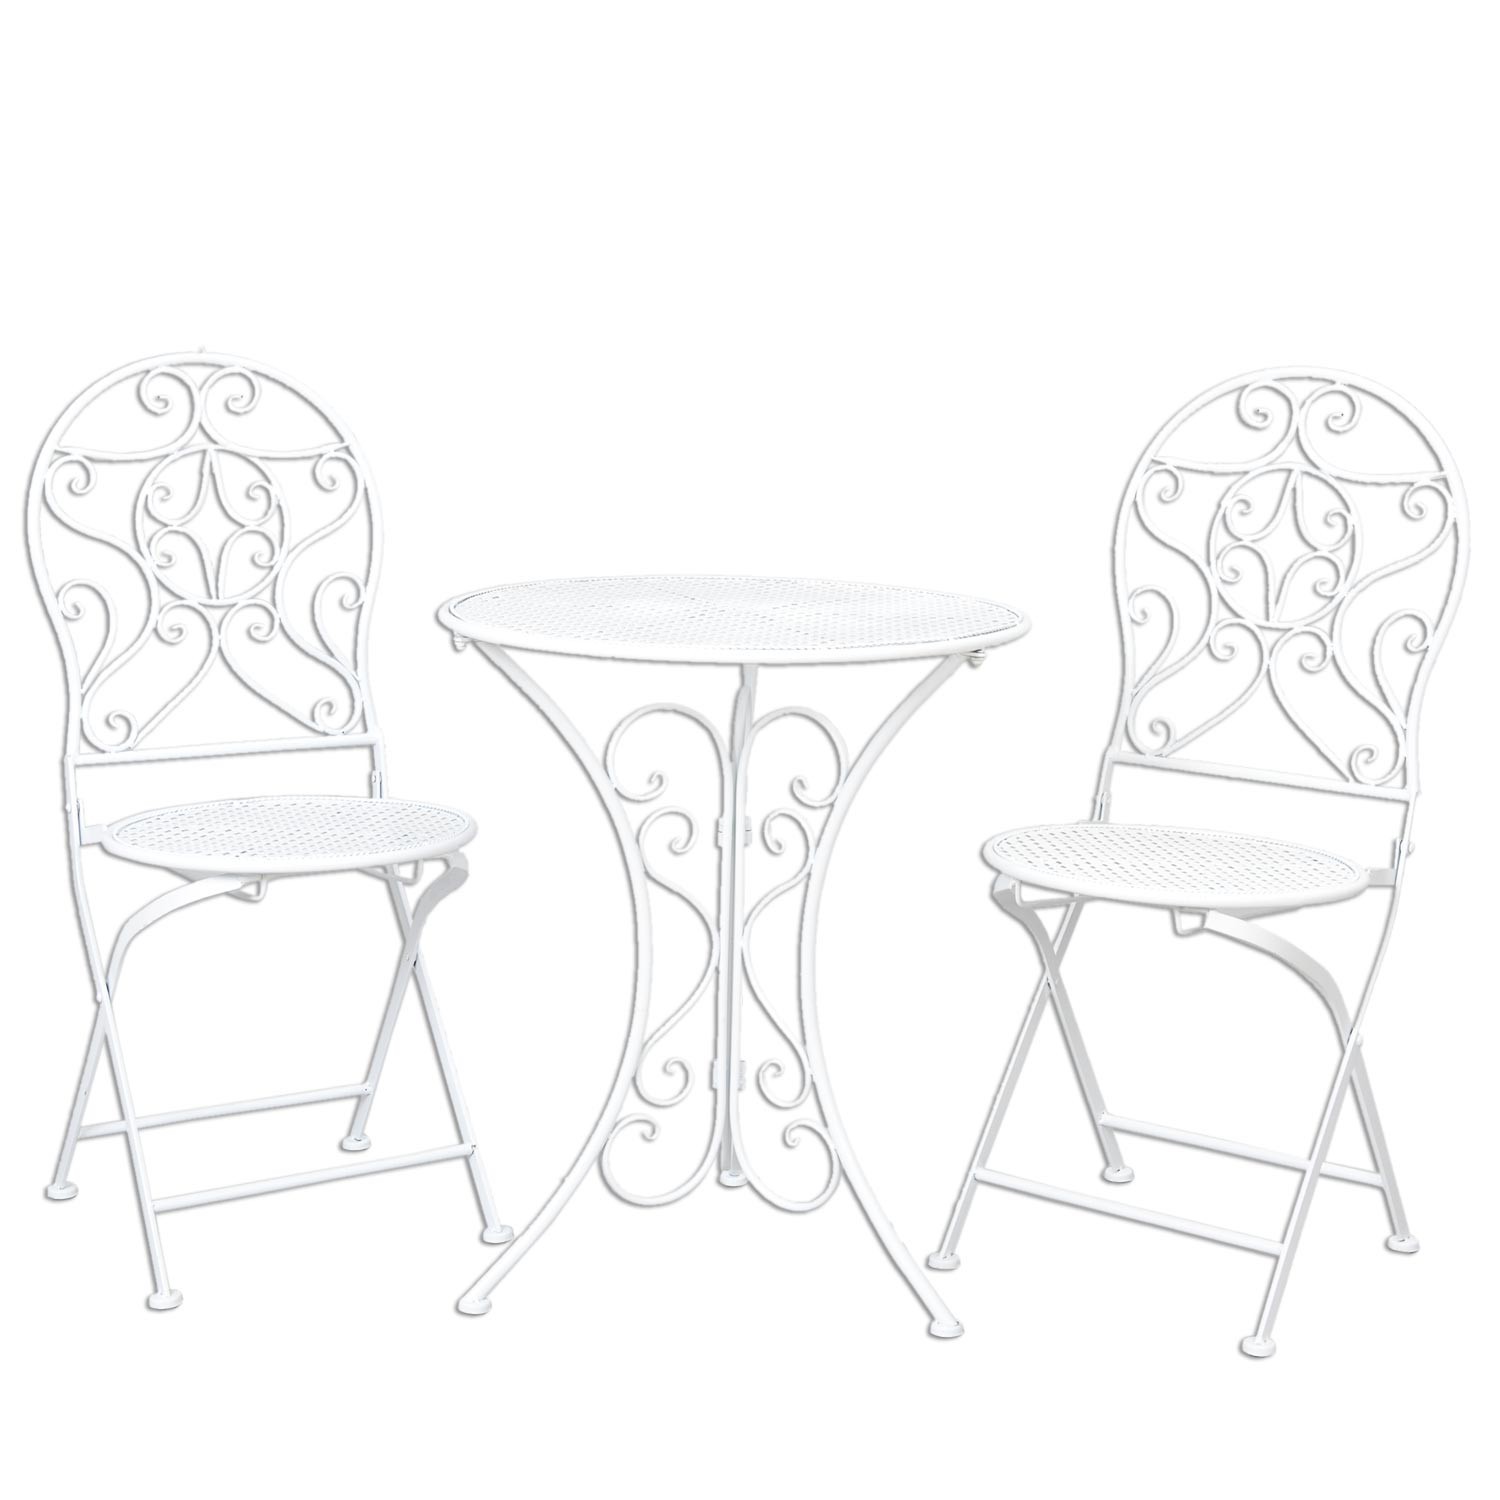 Bílá zahradní skládací souprava - stůl + 2 židle - Ø 60*70 / 2x Ø 40*40*92 cm 5Y0190